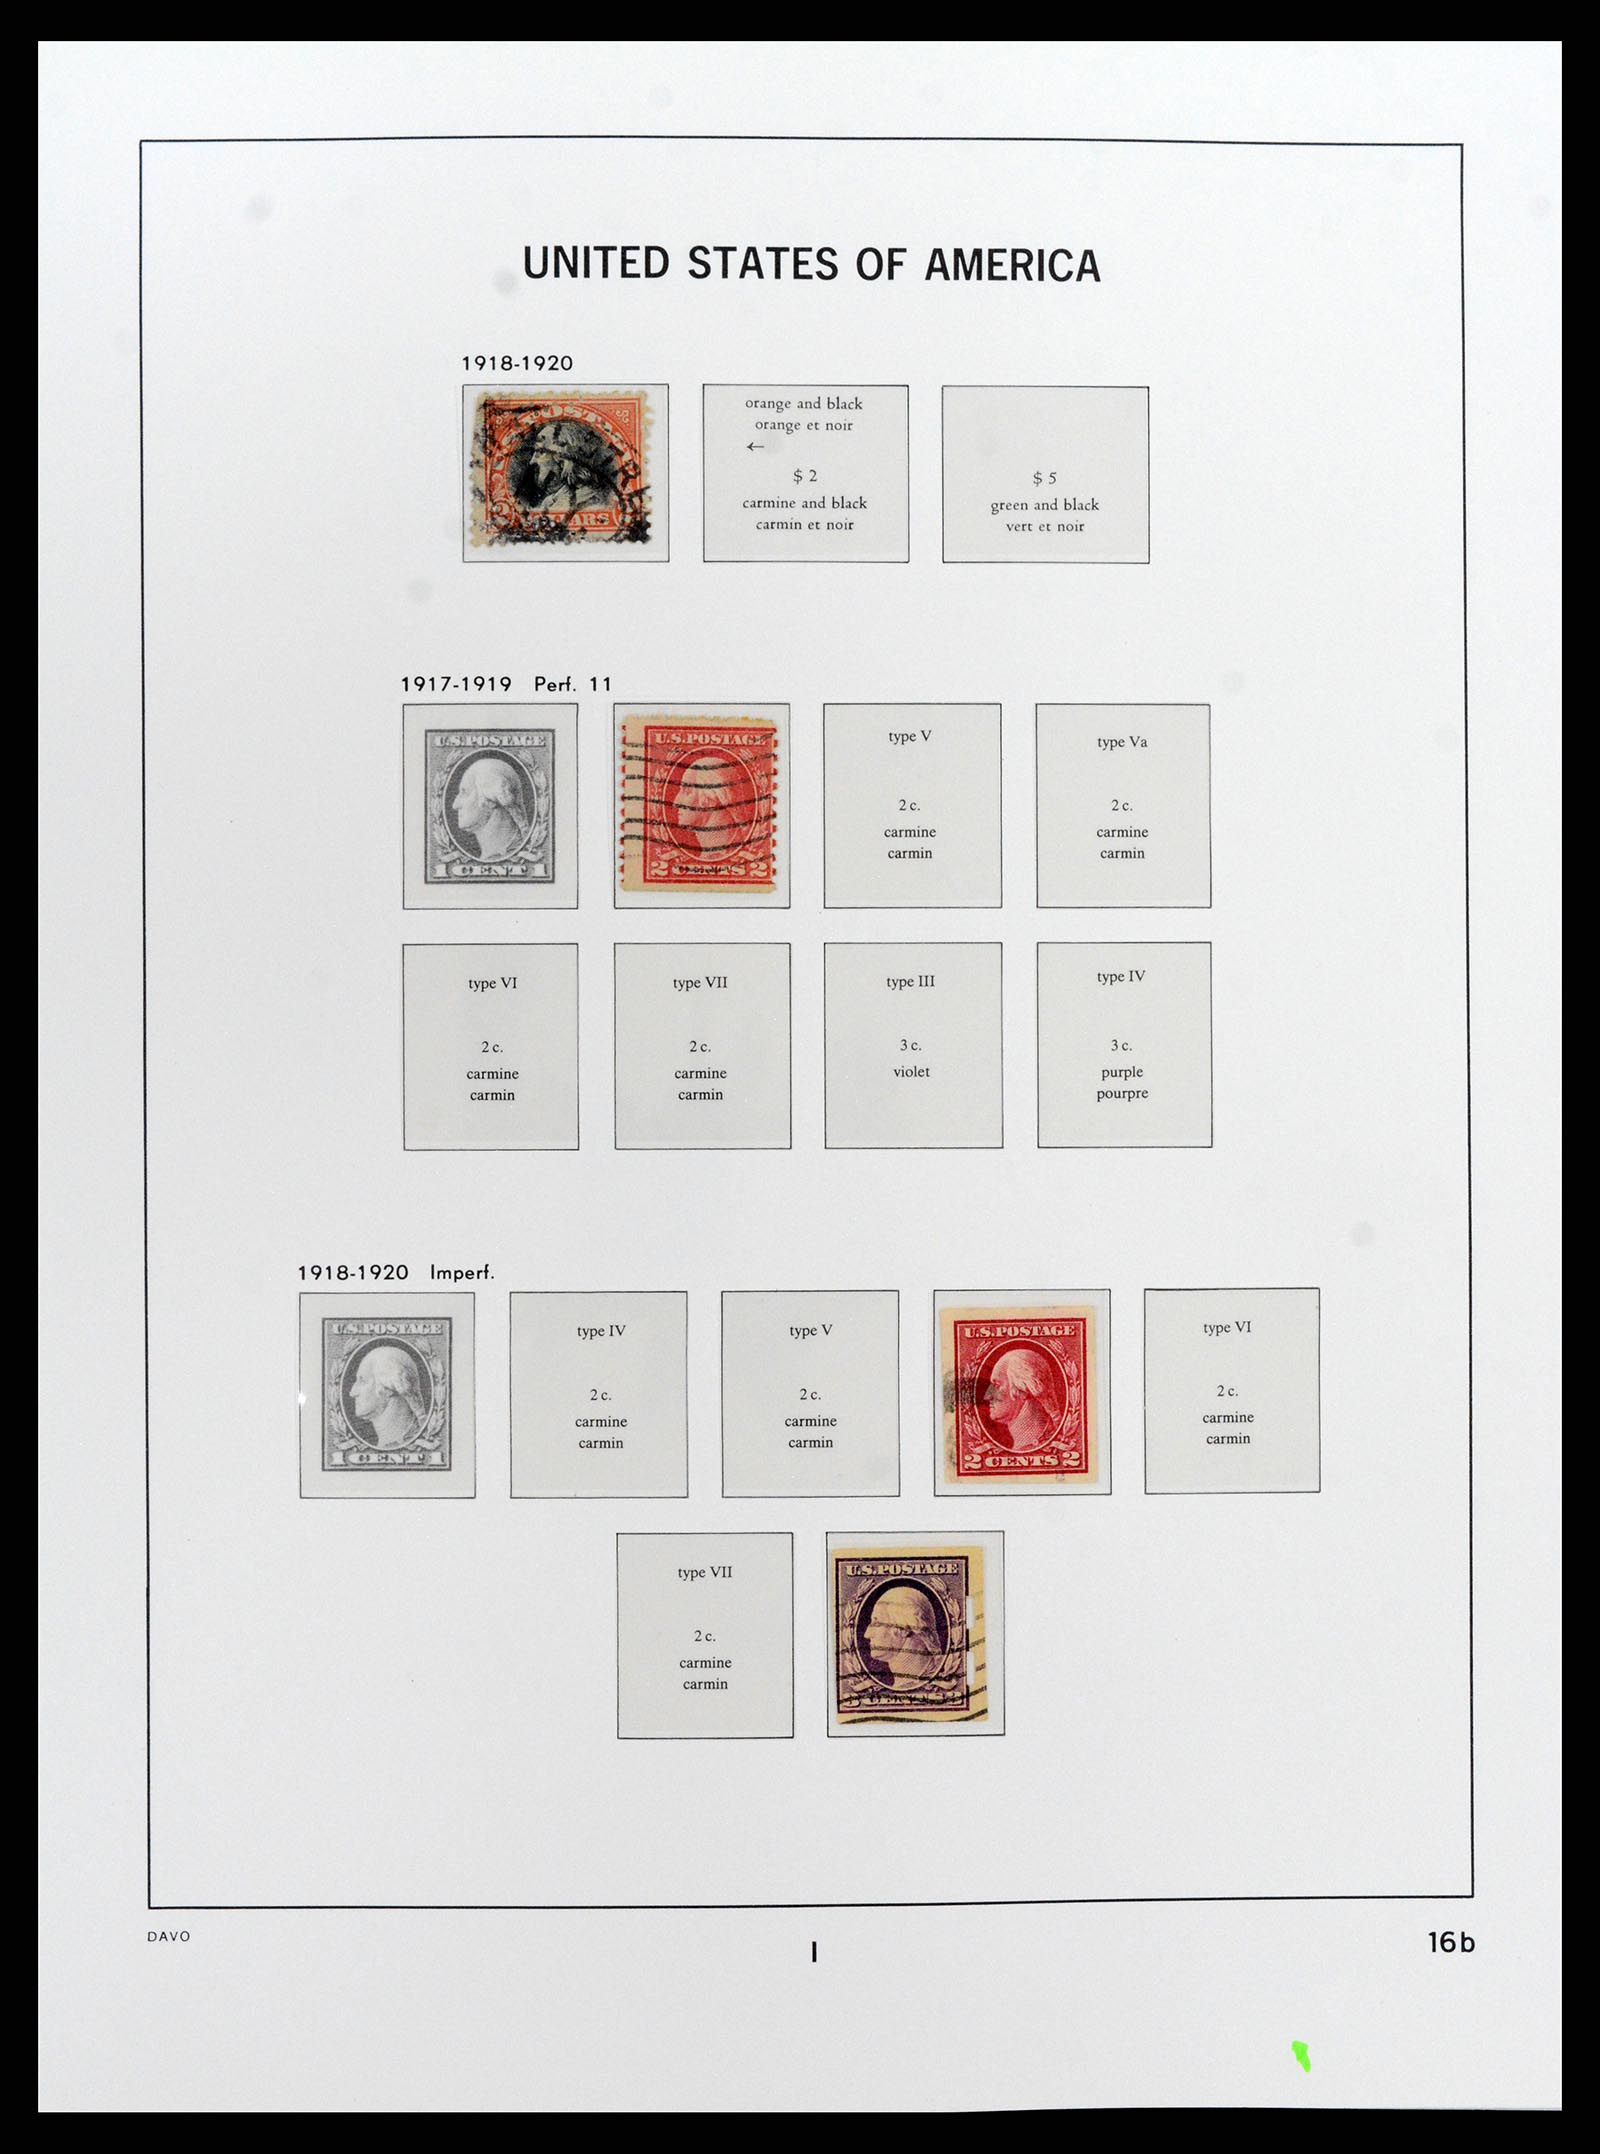 37810 024 - Stamp Collection 37810 USA 1851-2000.